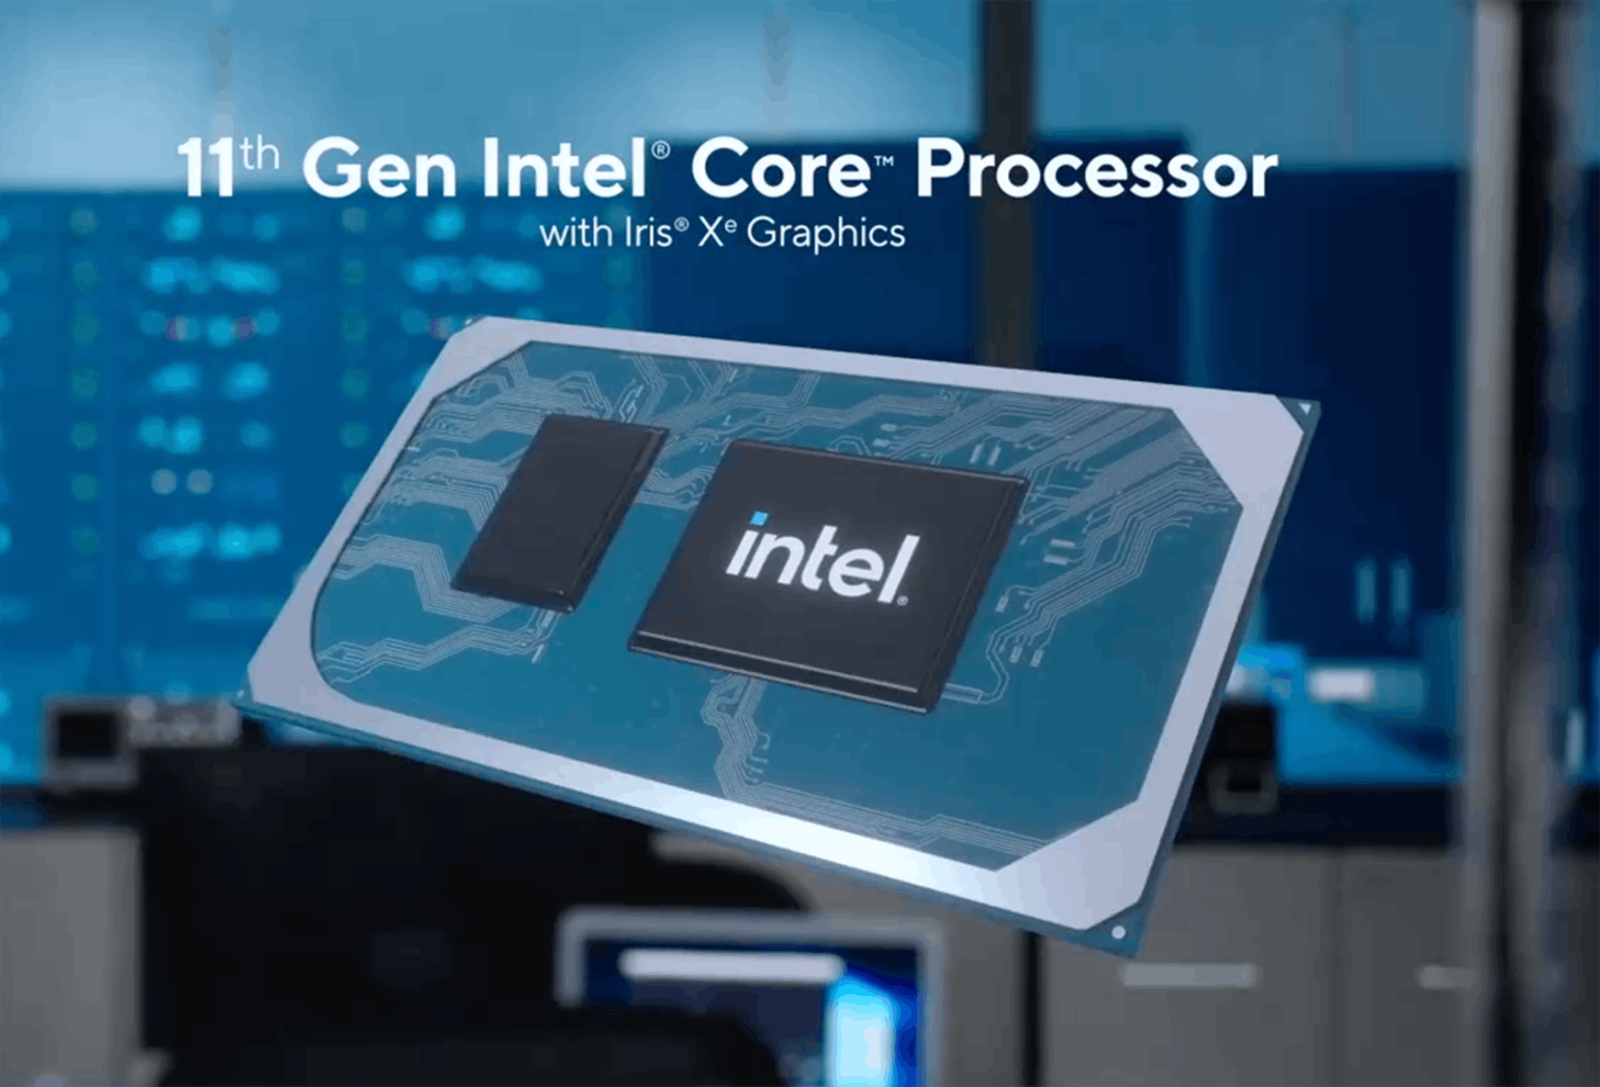 Intel Gen 11th – bước nhảy về hiệu năng đồ họa cho laptop thế hệ mới 11